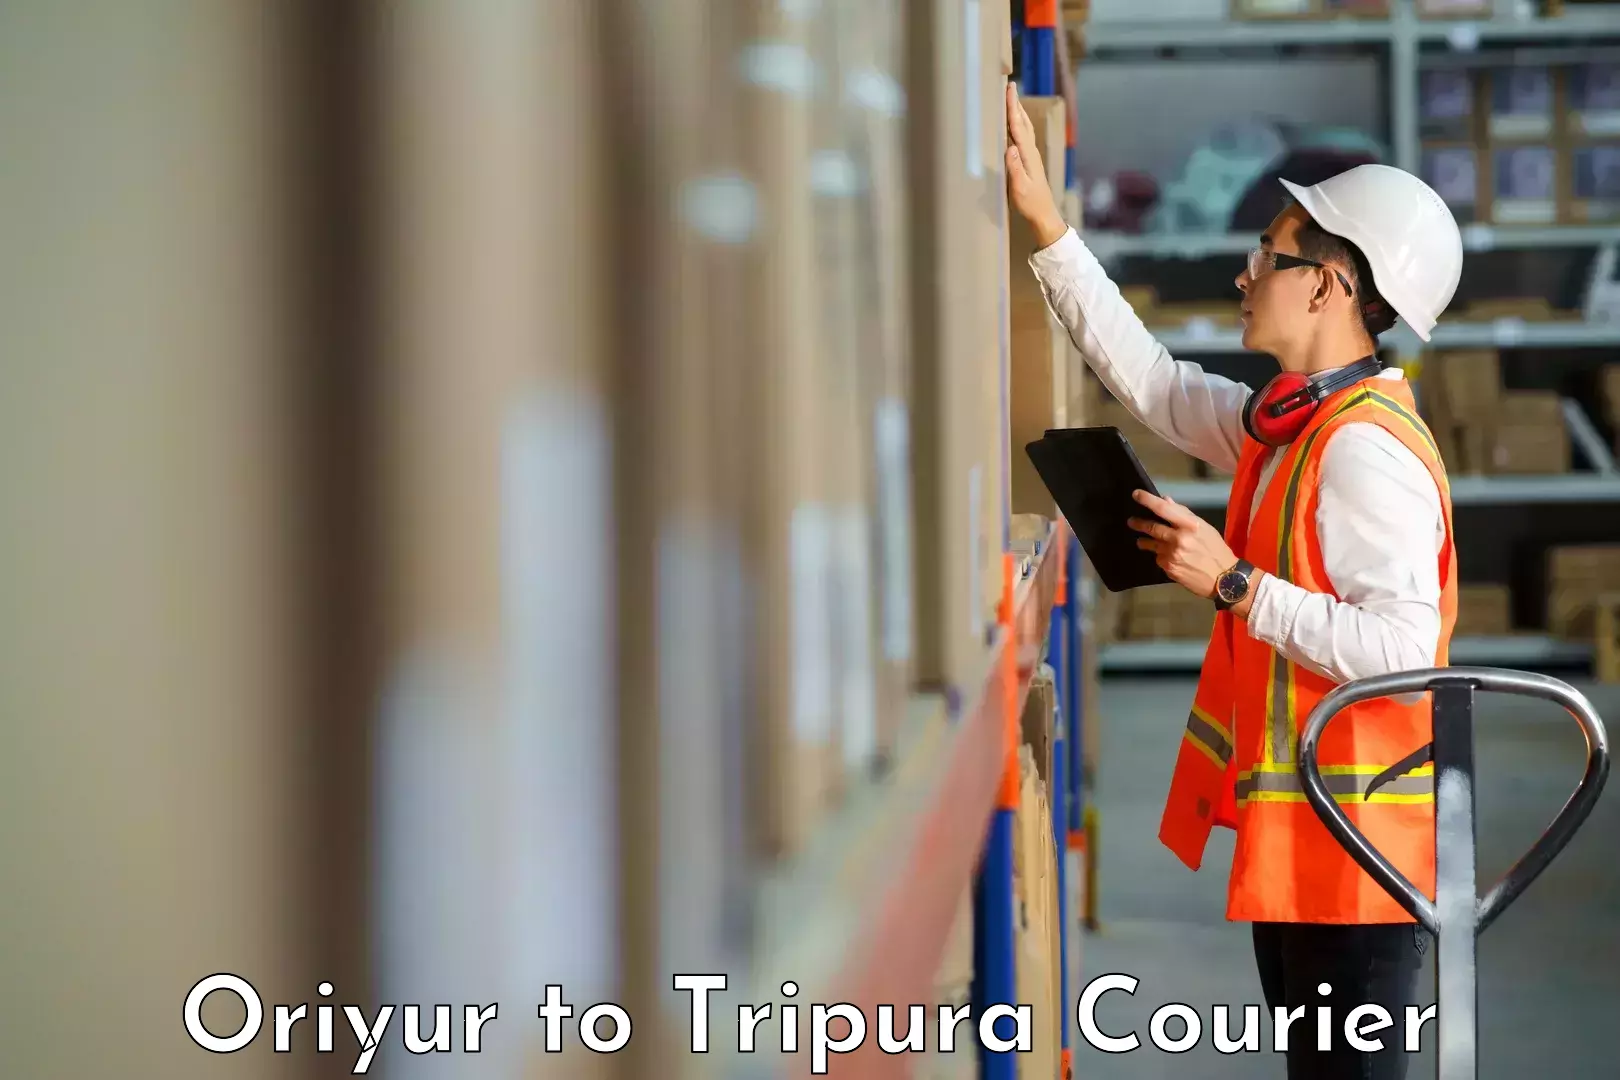 Efficient order fulfillment Oriyur to Tripura